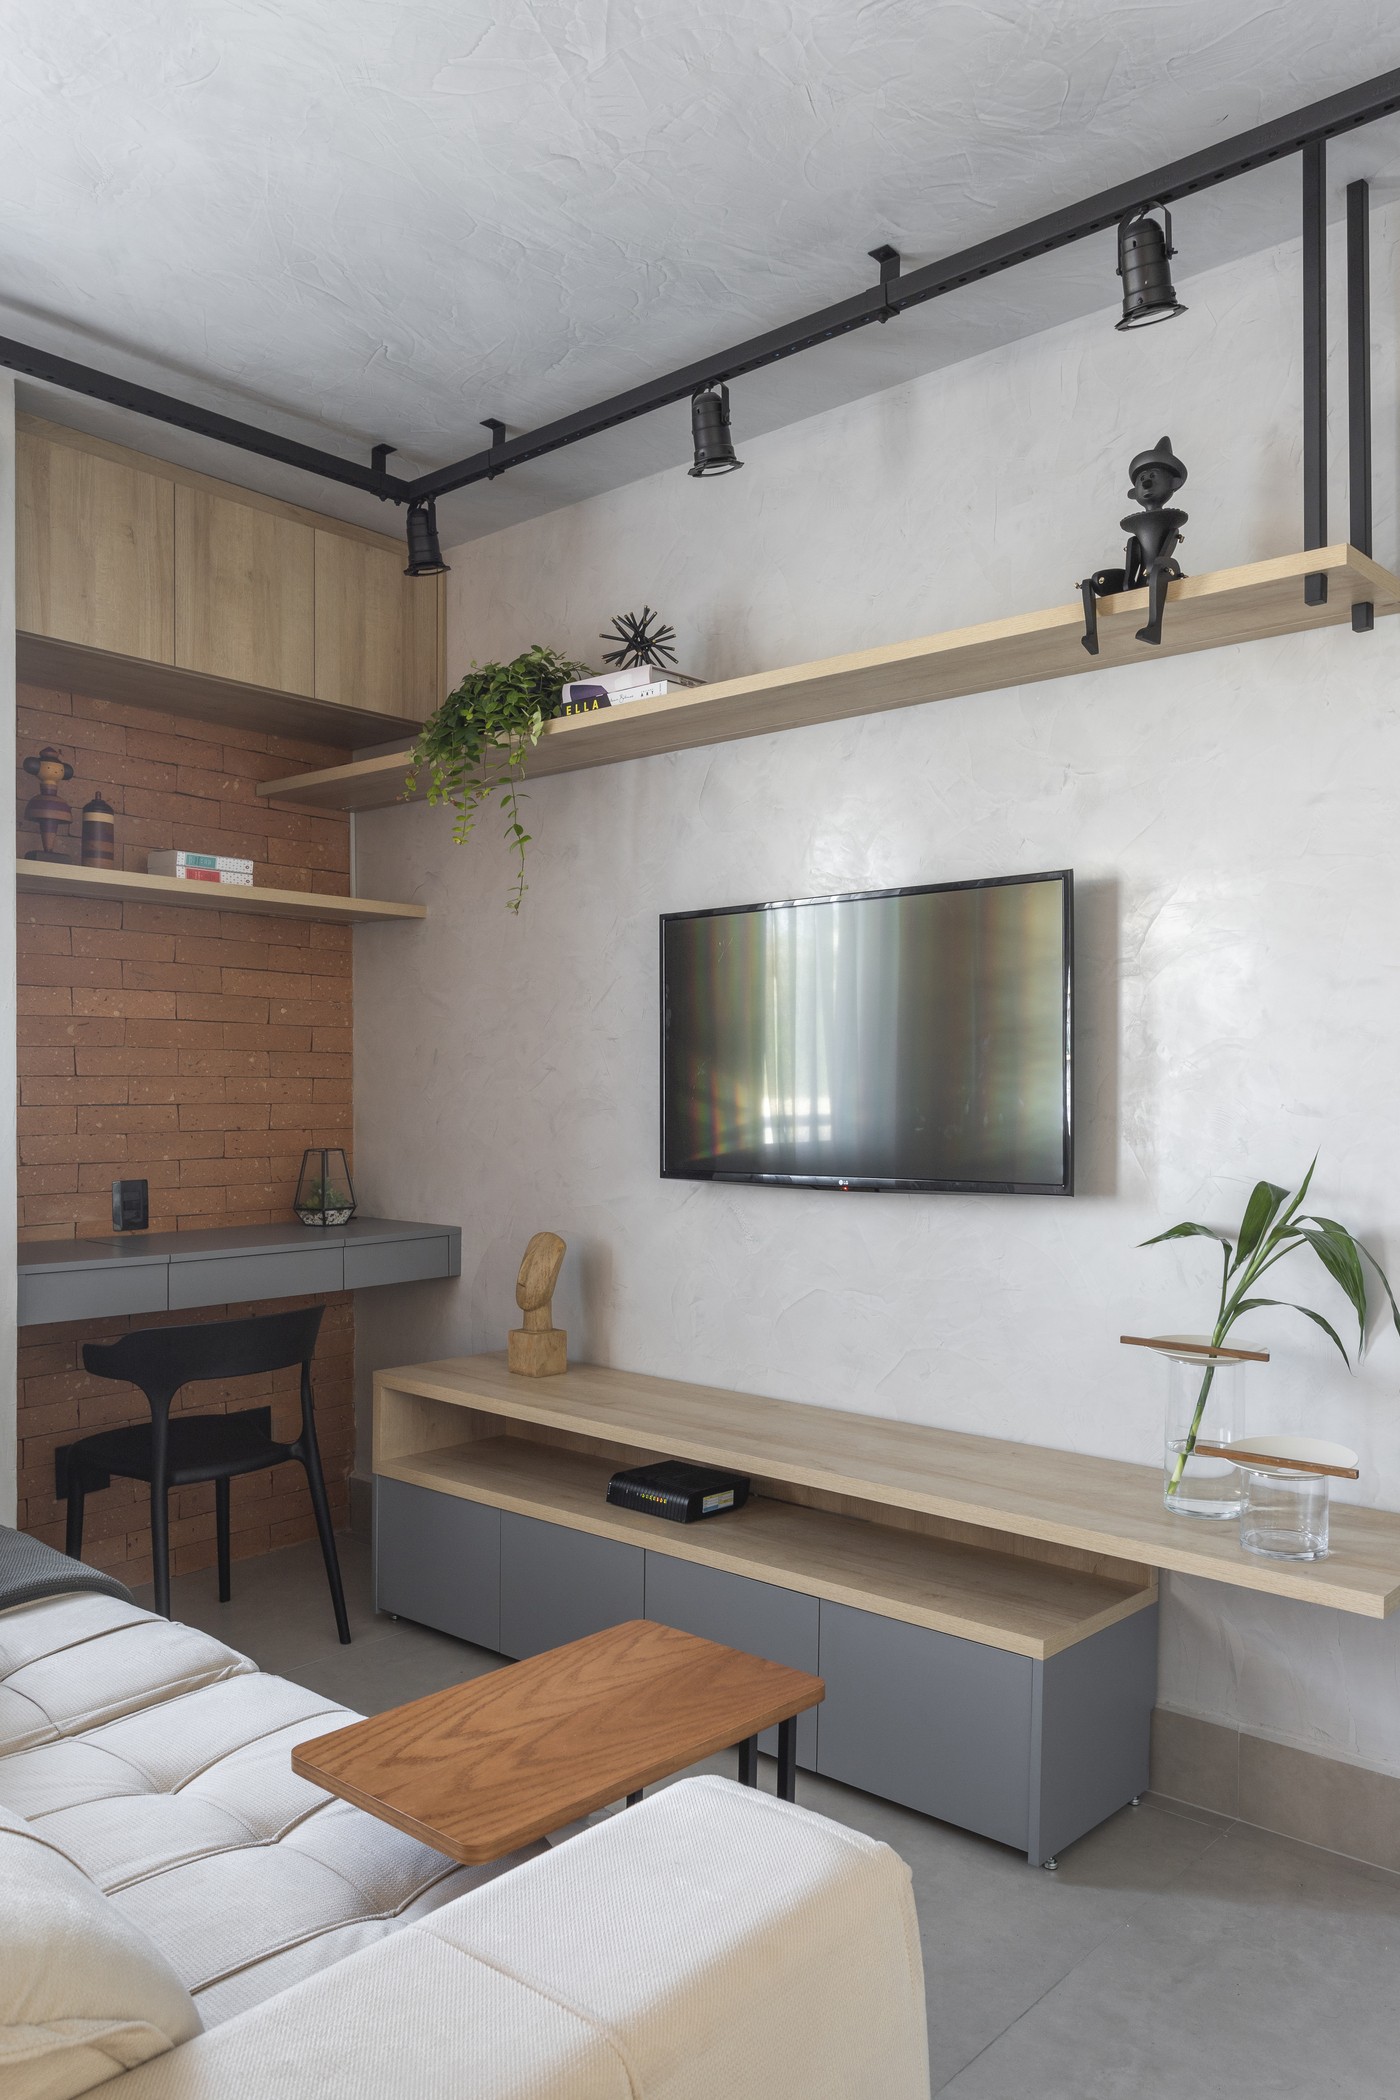 Décor do dia: living com estilo industrial e espaço para home office (Foto: Tiago Travesso)